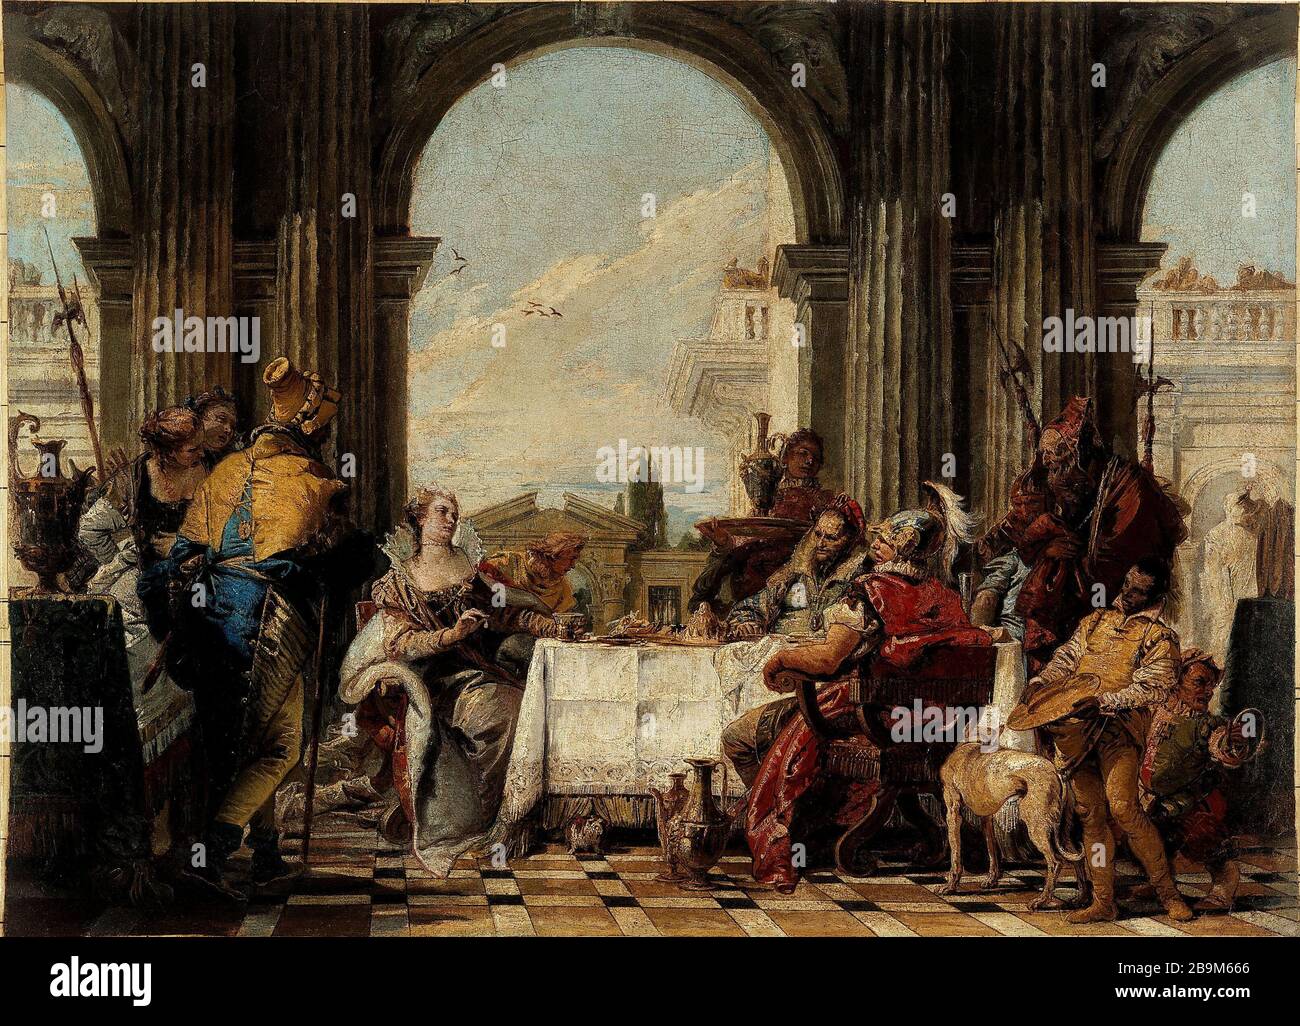 THE BANQUET OF CLEOPATRA Giambattista Tiepolo (1696-1770). "Le Banquet de  Cléopatre, entre 1742 et 1743". Huile sur toile. Paris, musée Cognacq-Jay  Stock Photo - Alamy